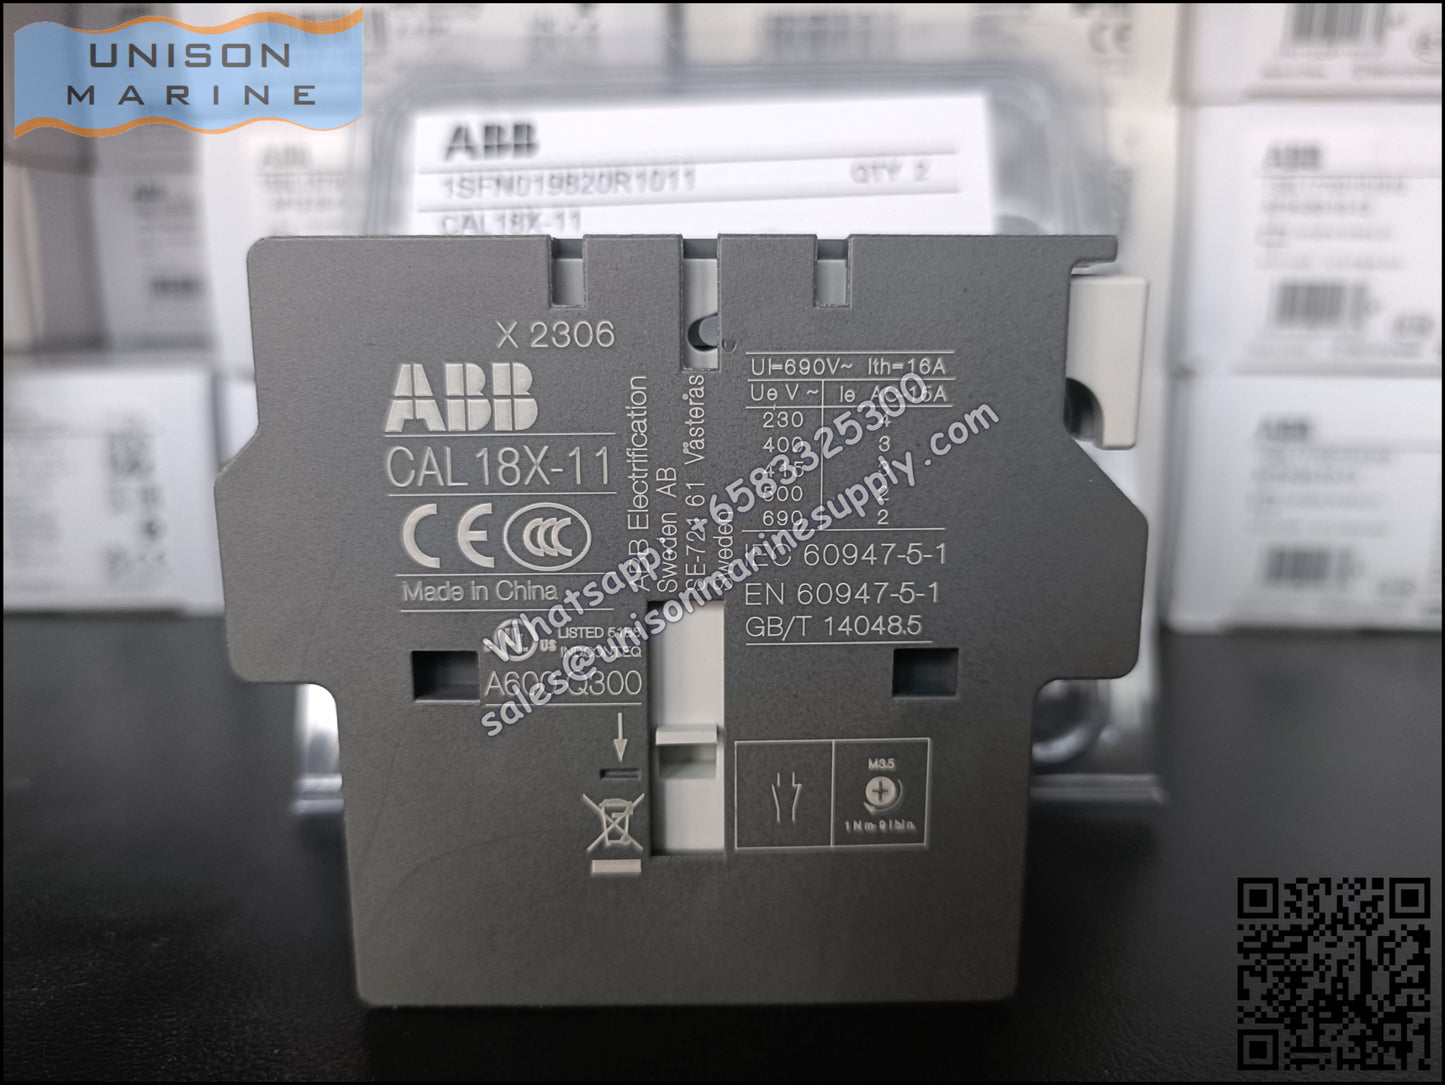 ABB AX Contactors Accessories Auxiliary Contact Block CAL18X-11 / CAL18X-11B